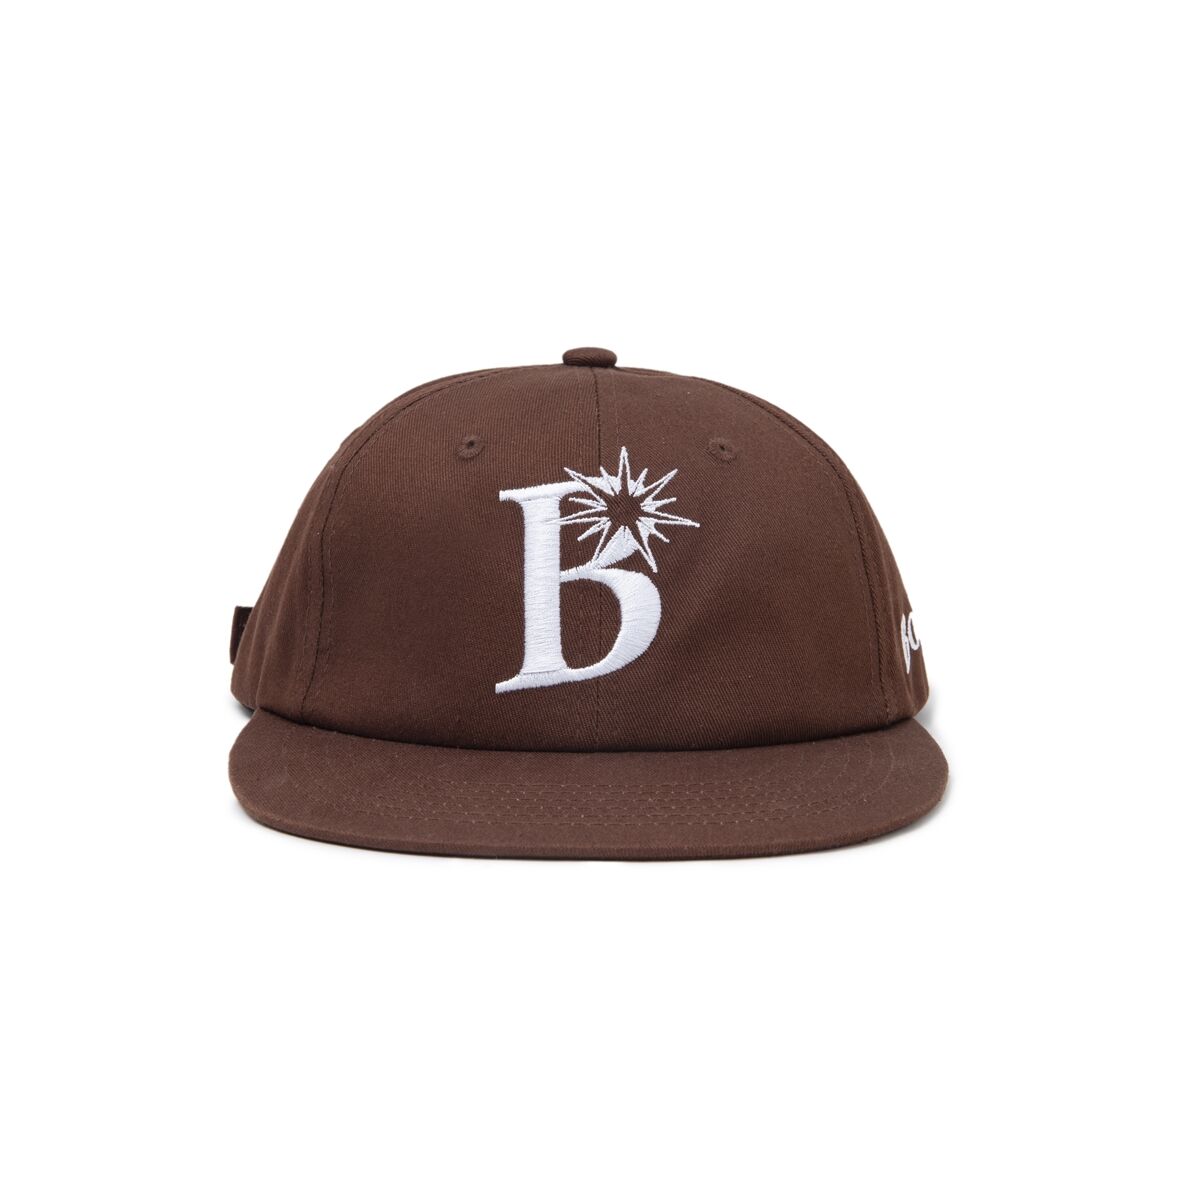 BoTT / B LOGO 6 PANEL CAP / BROWN | Sophomore